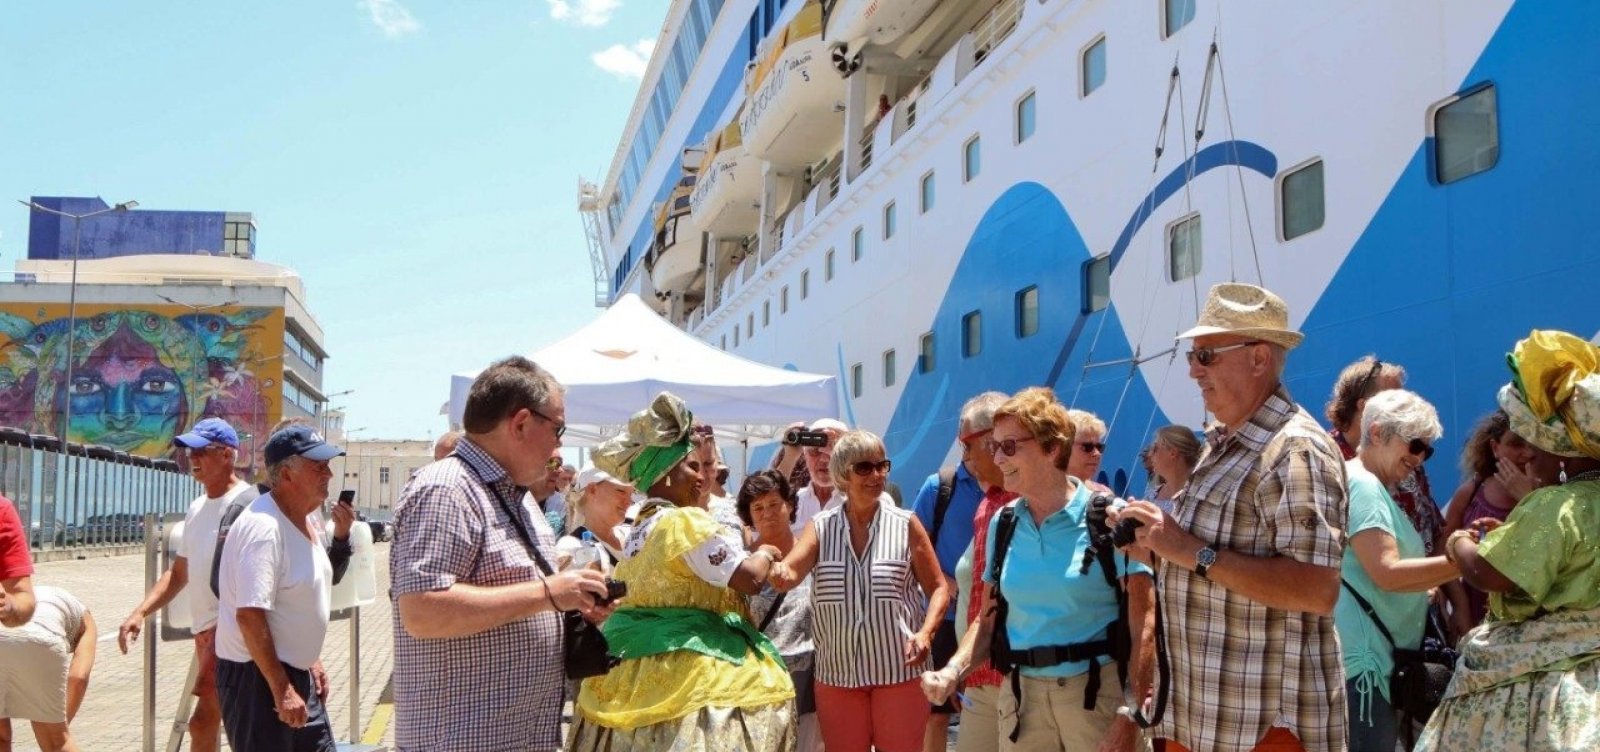 Carnaval: cerca de 17 mil turistas chegam a Salvador em navios de cruzeiro